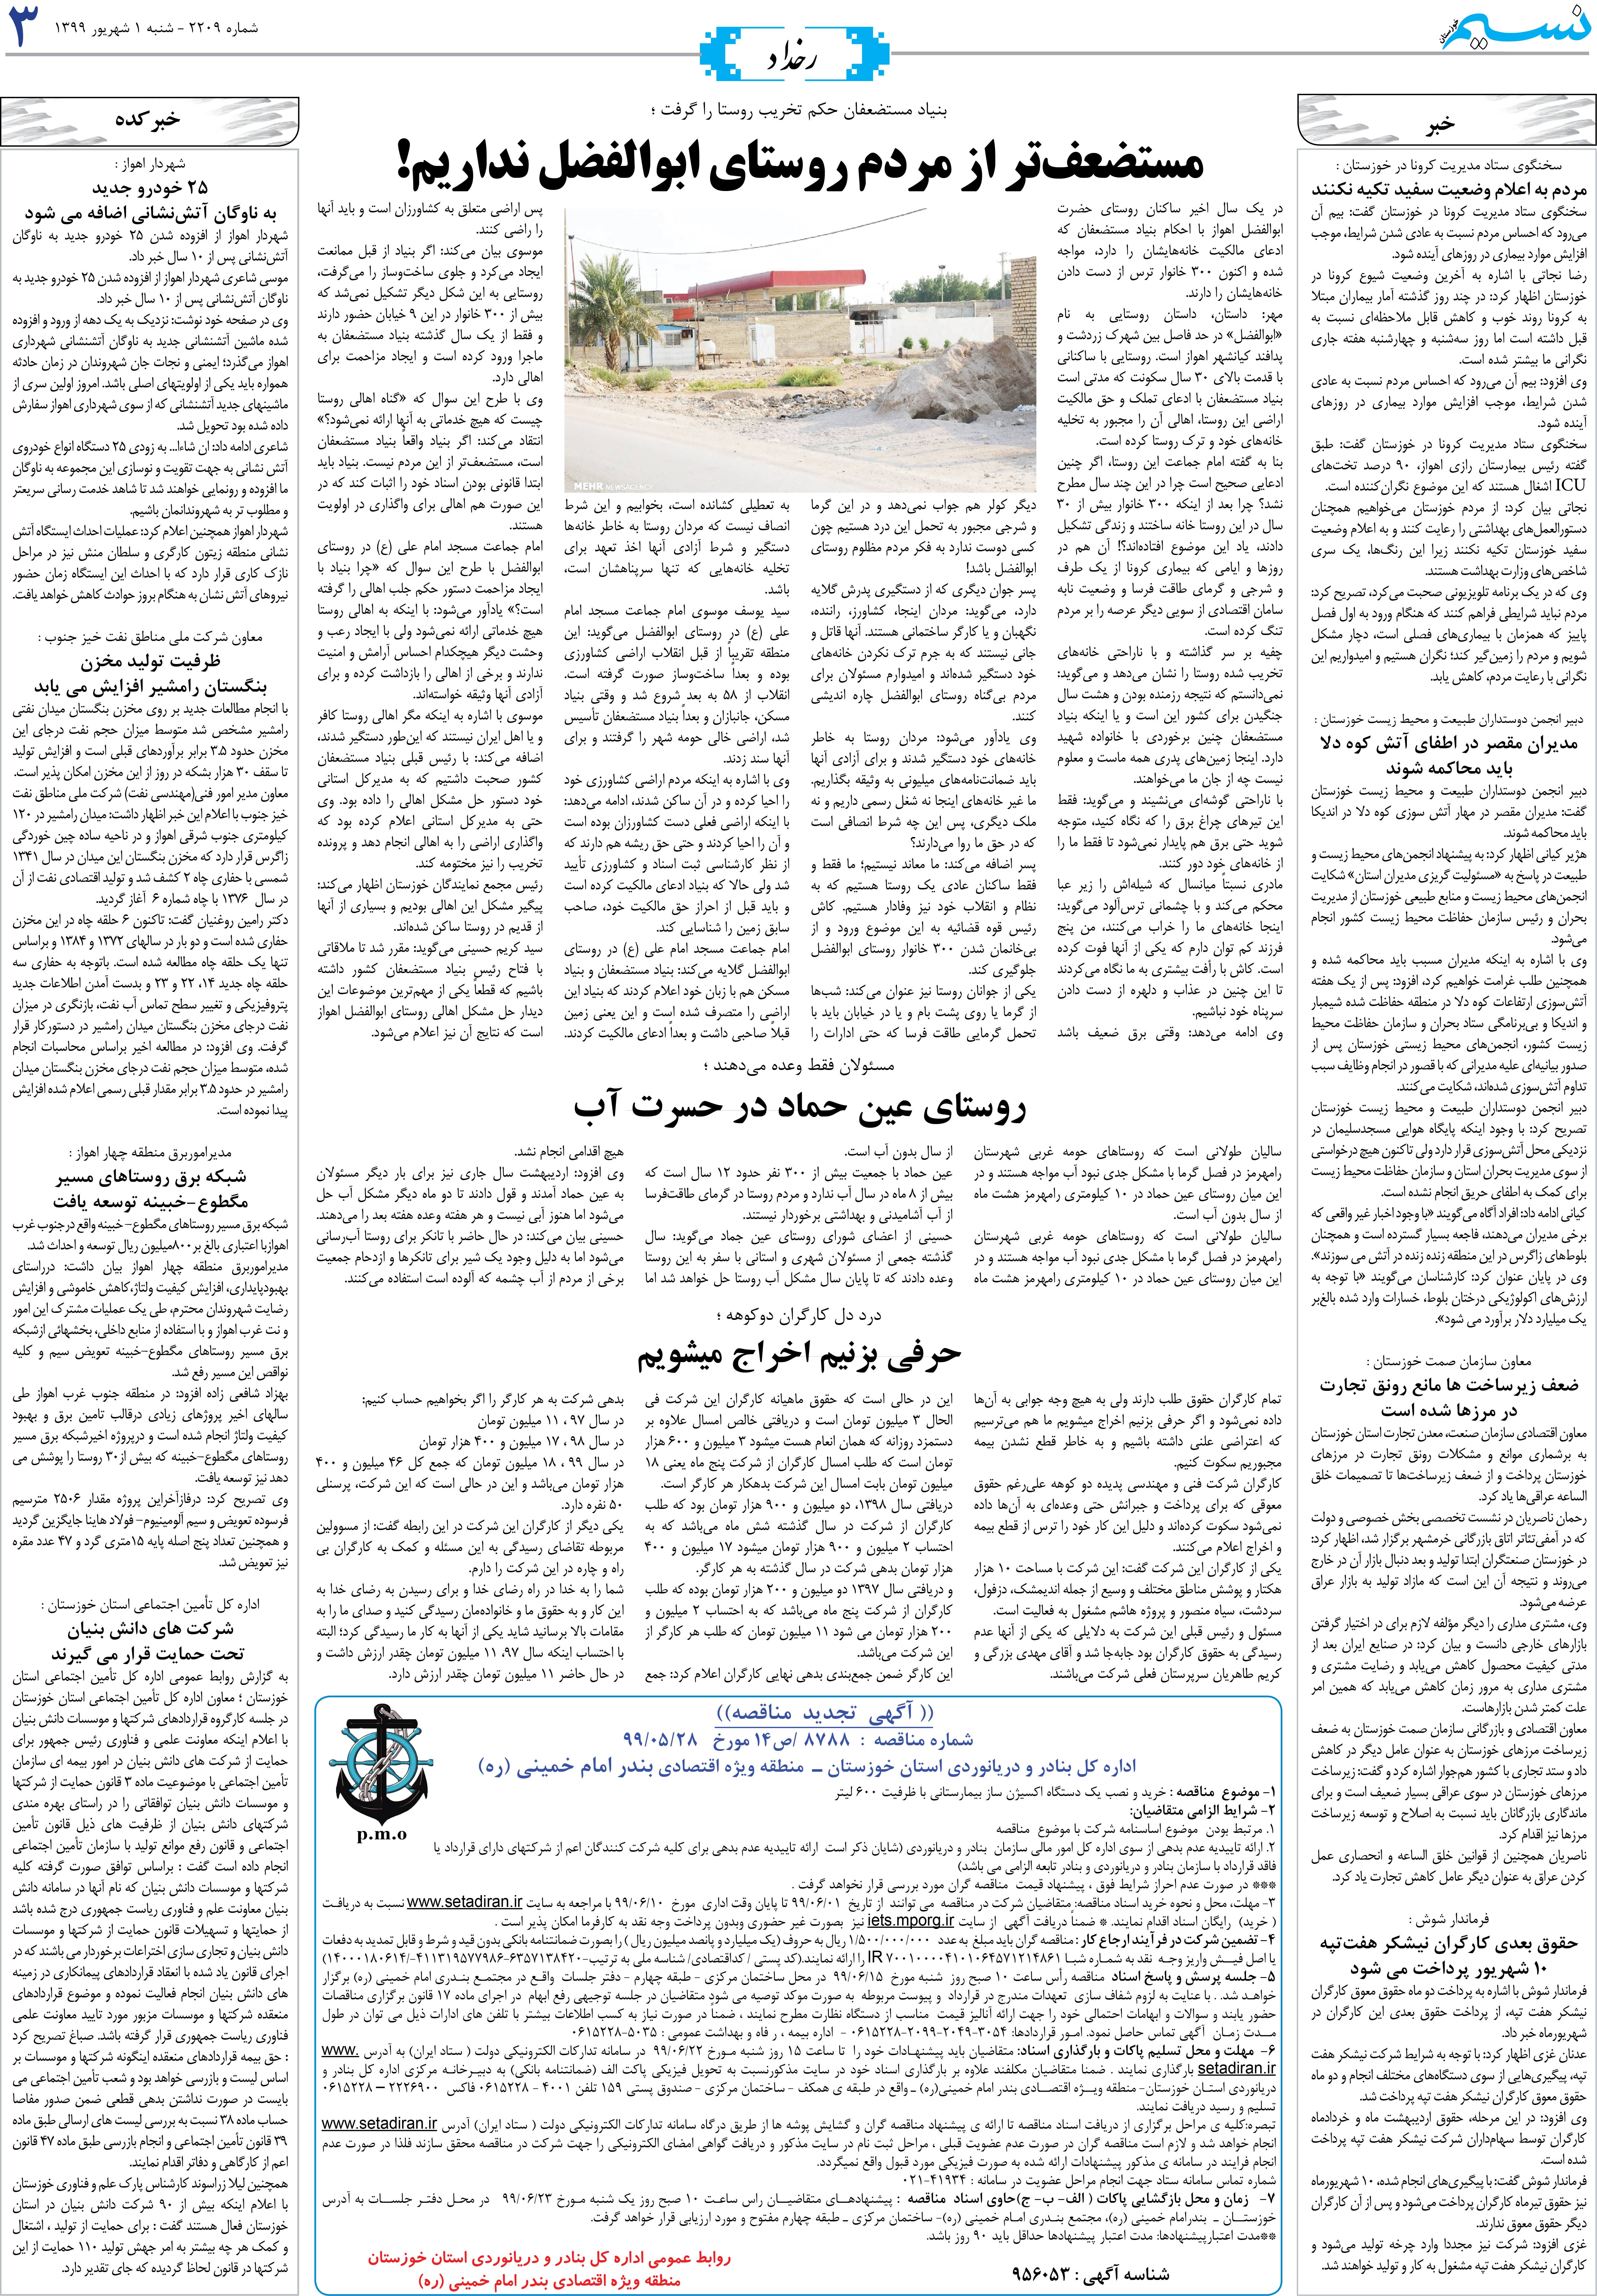 صفحه رخداد روزنامه نسیم شماره 2209